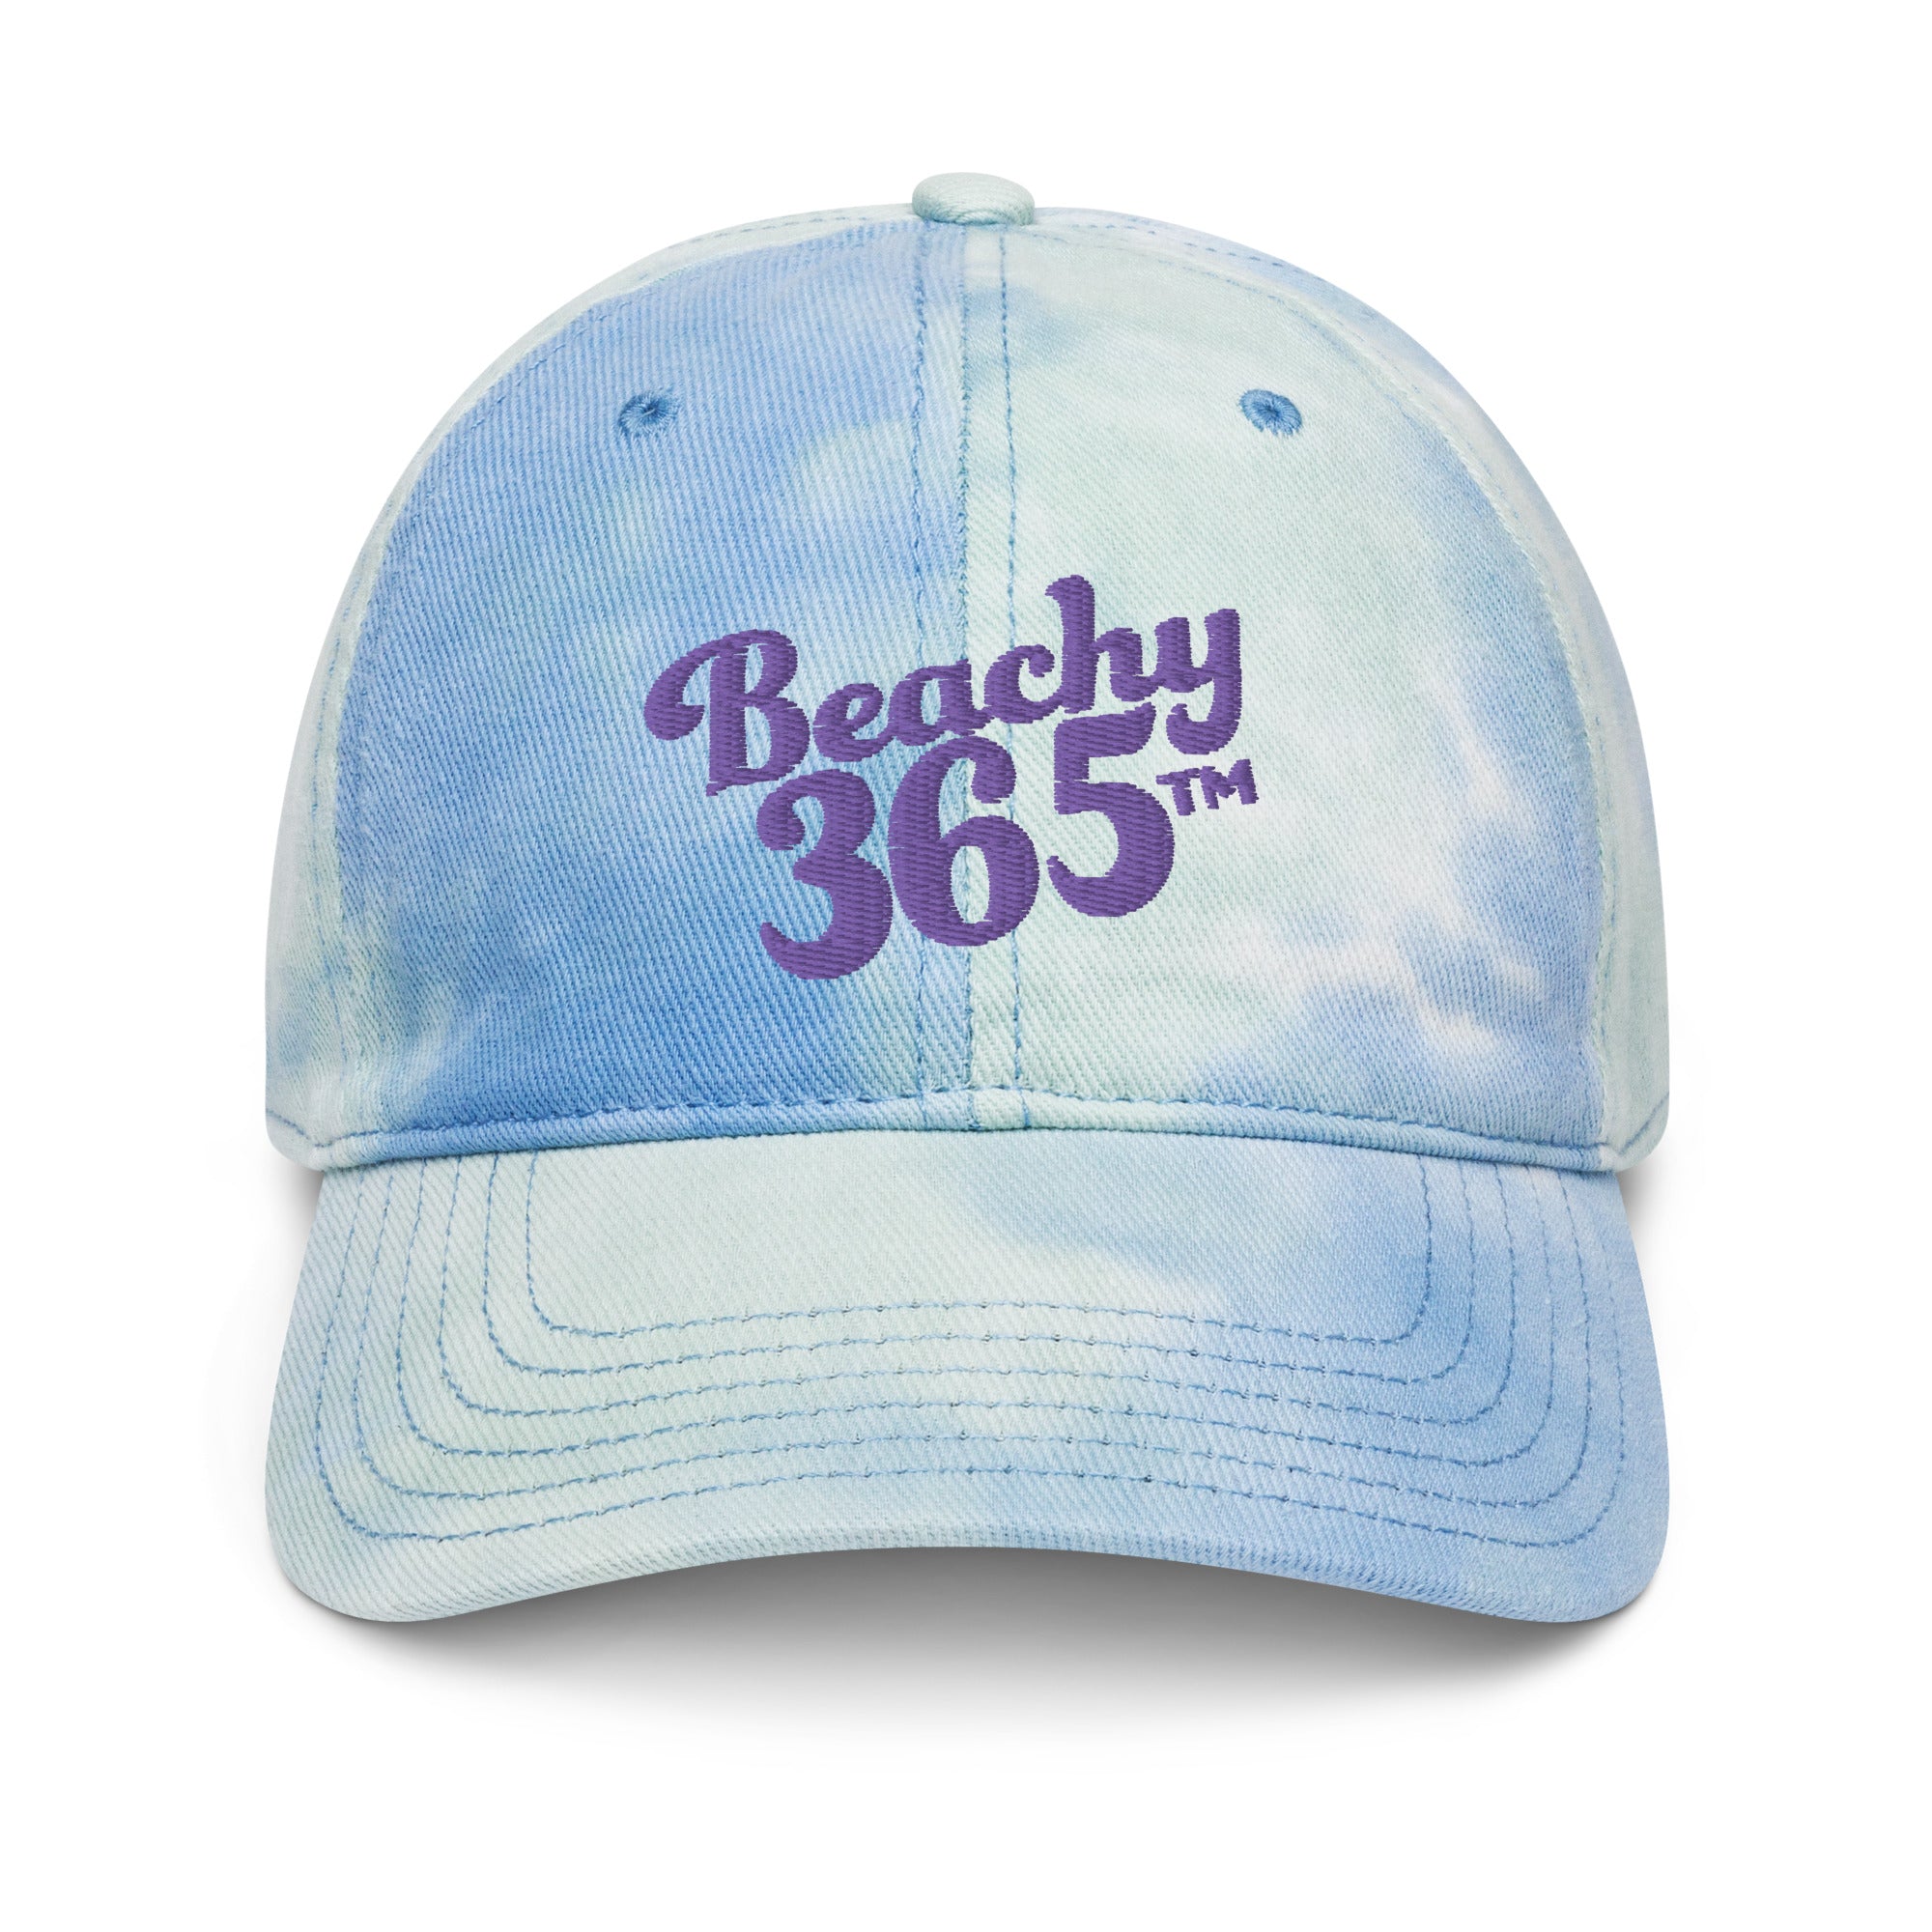 Beachy365 Tie Dye Hat